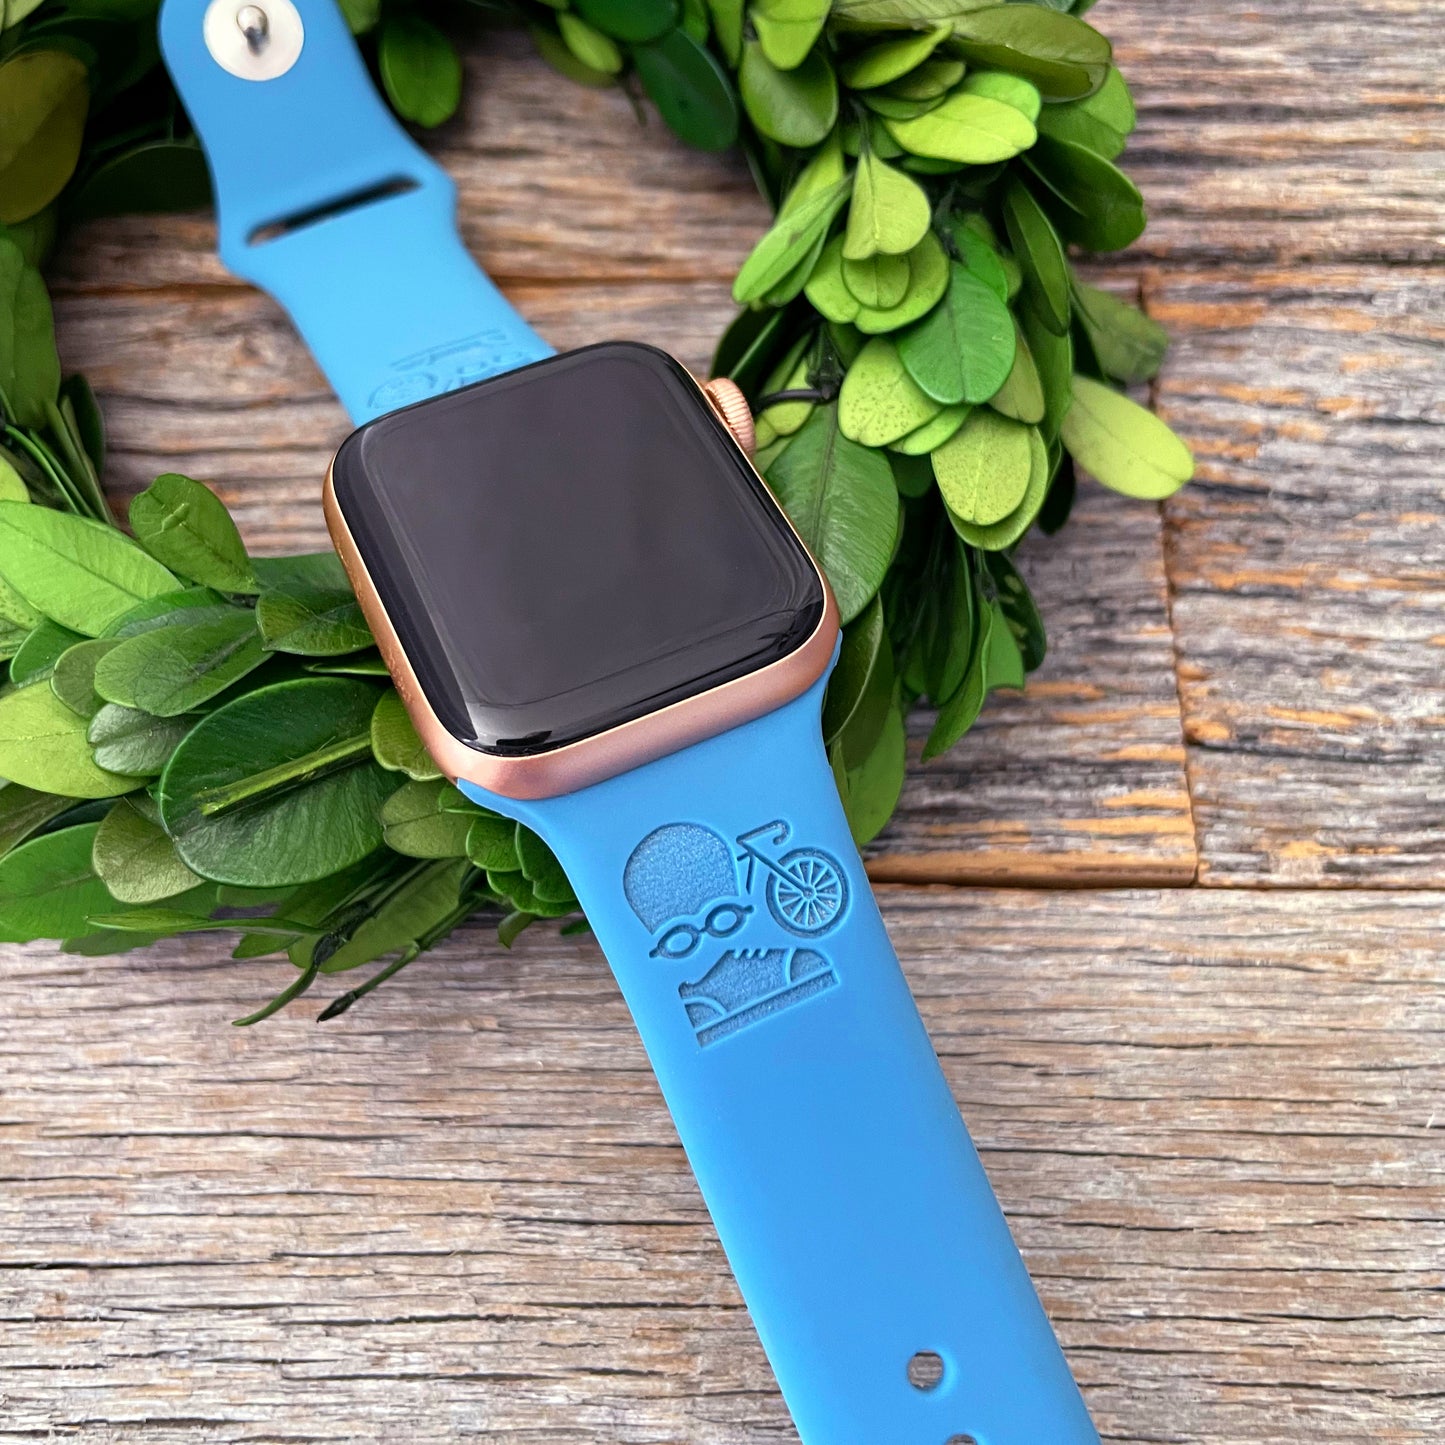 Custom engraved TRIATHLON Apple Watch band